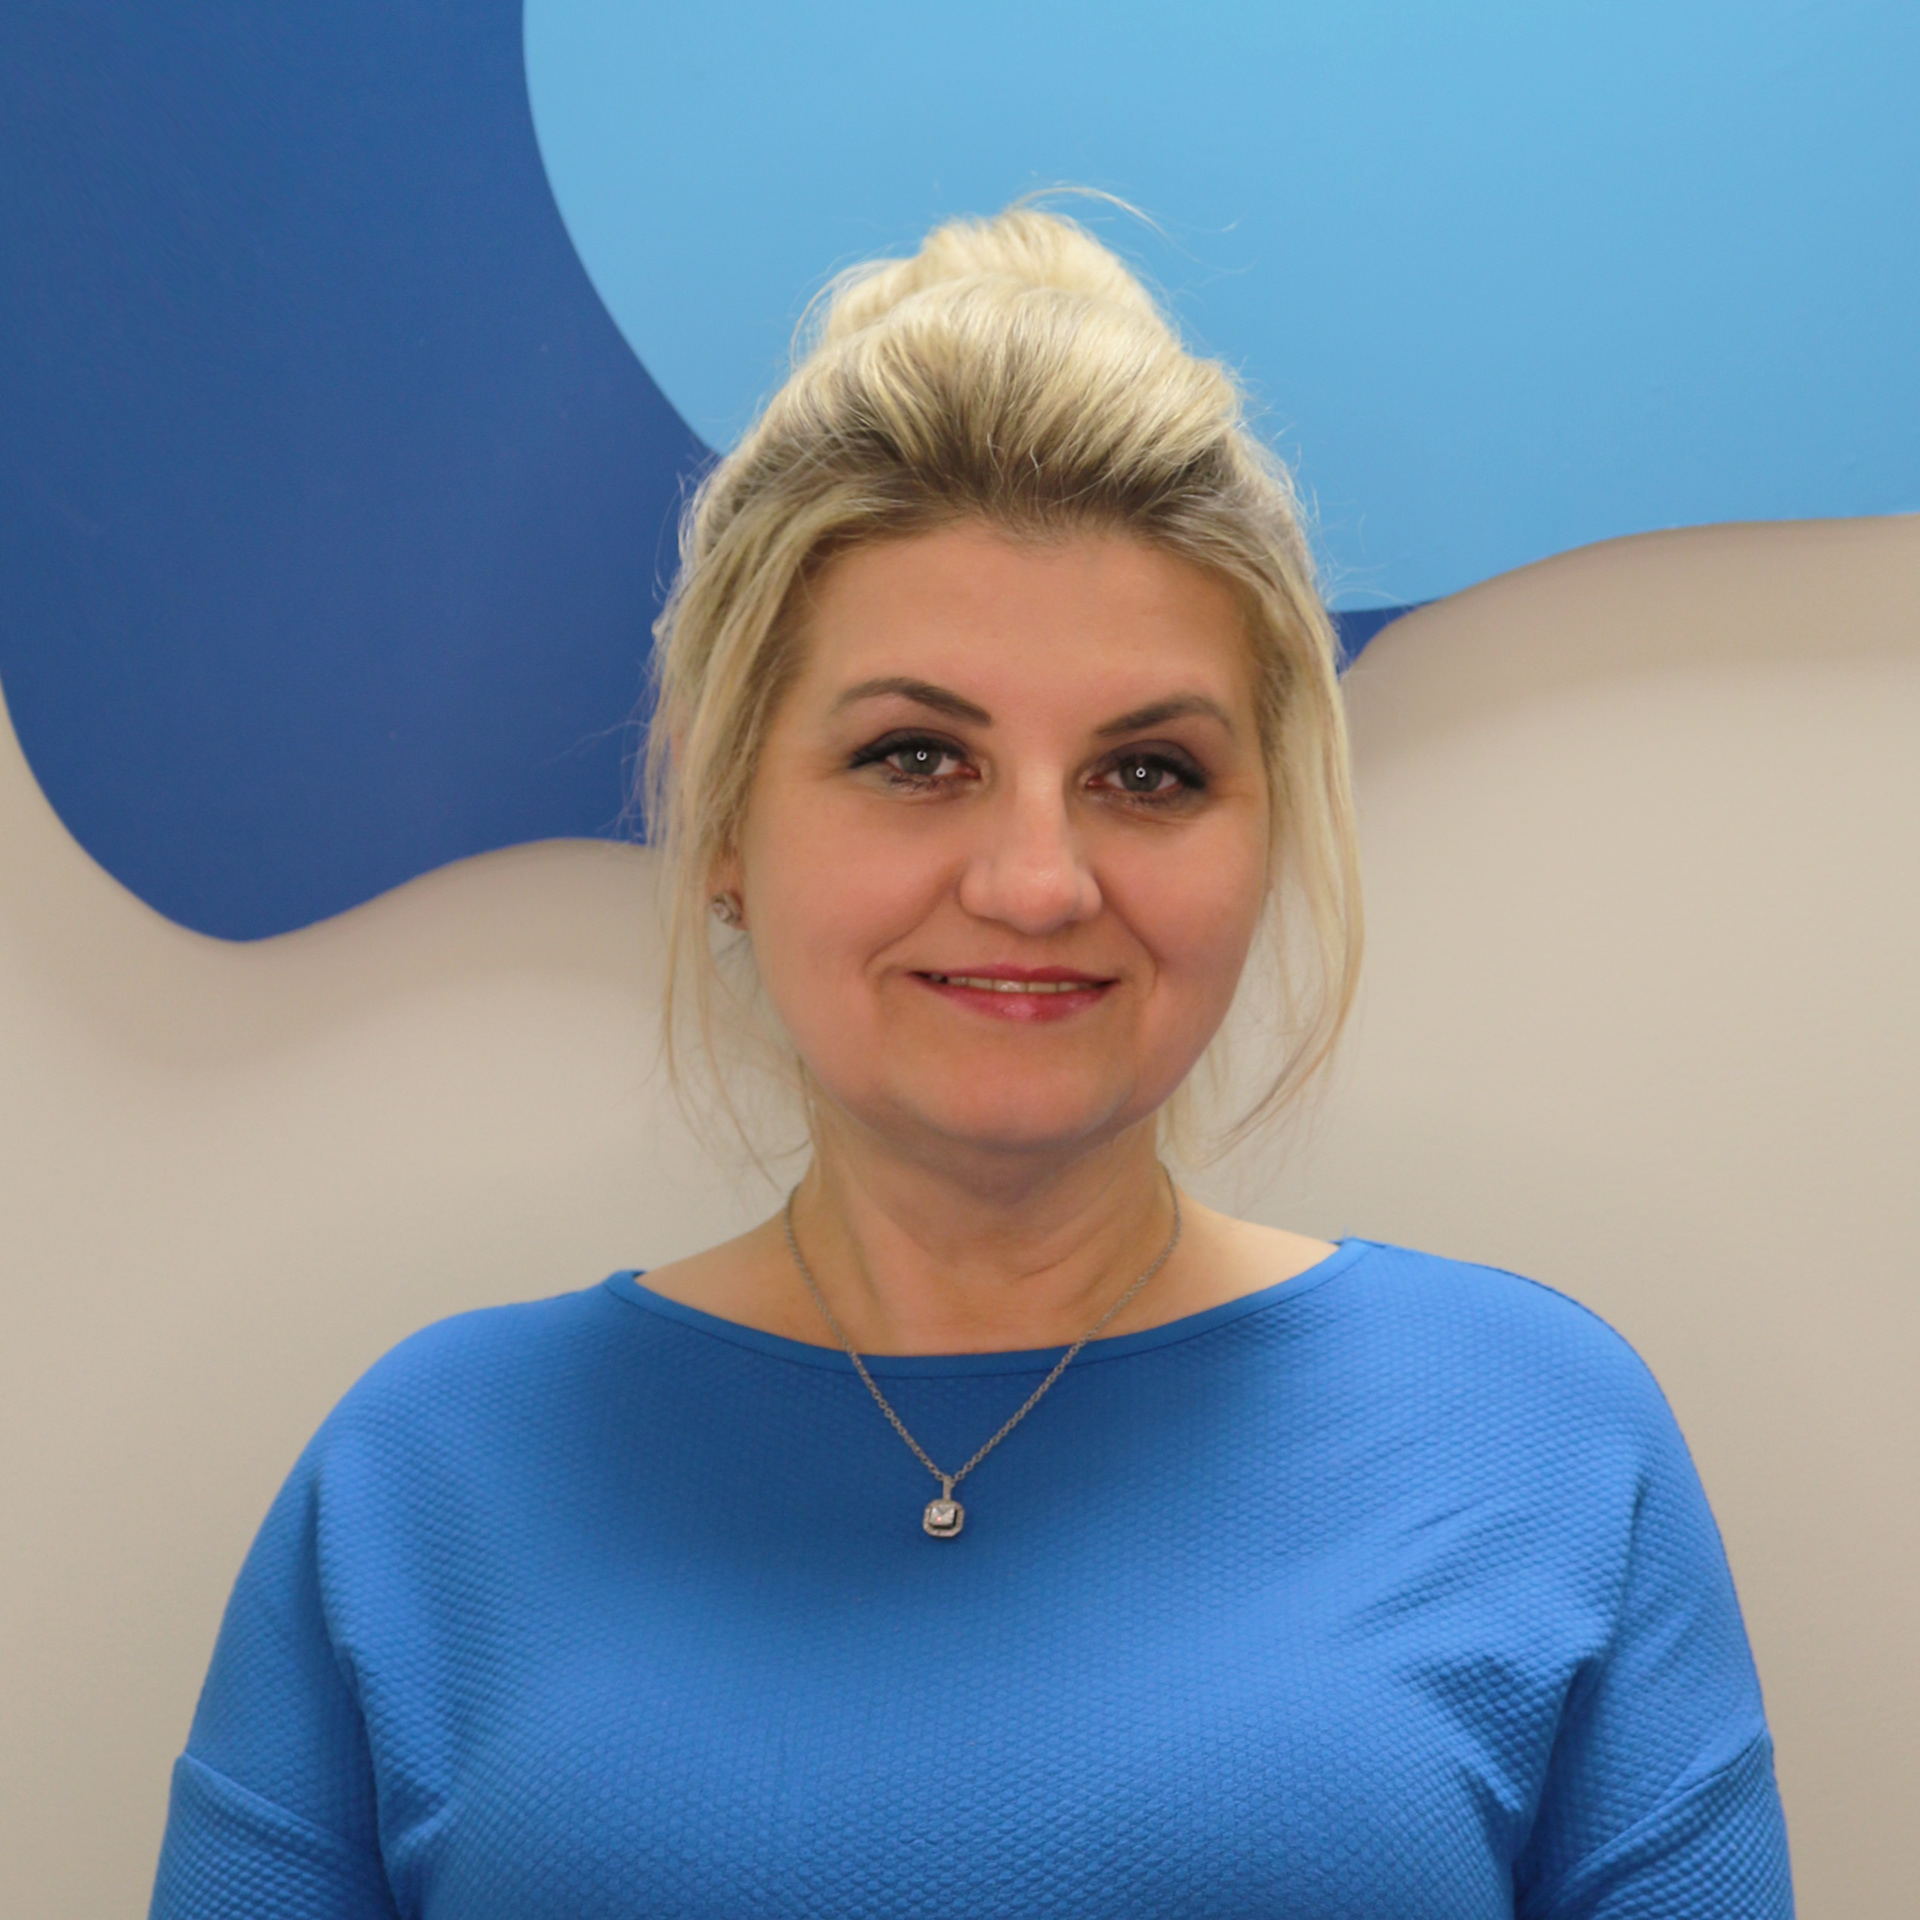 Specjalista Jolanta Jędrzejewska - Logopeda, pedagog, nauczyciel wychowania przedszkolnego